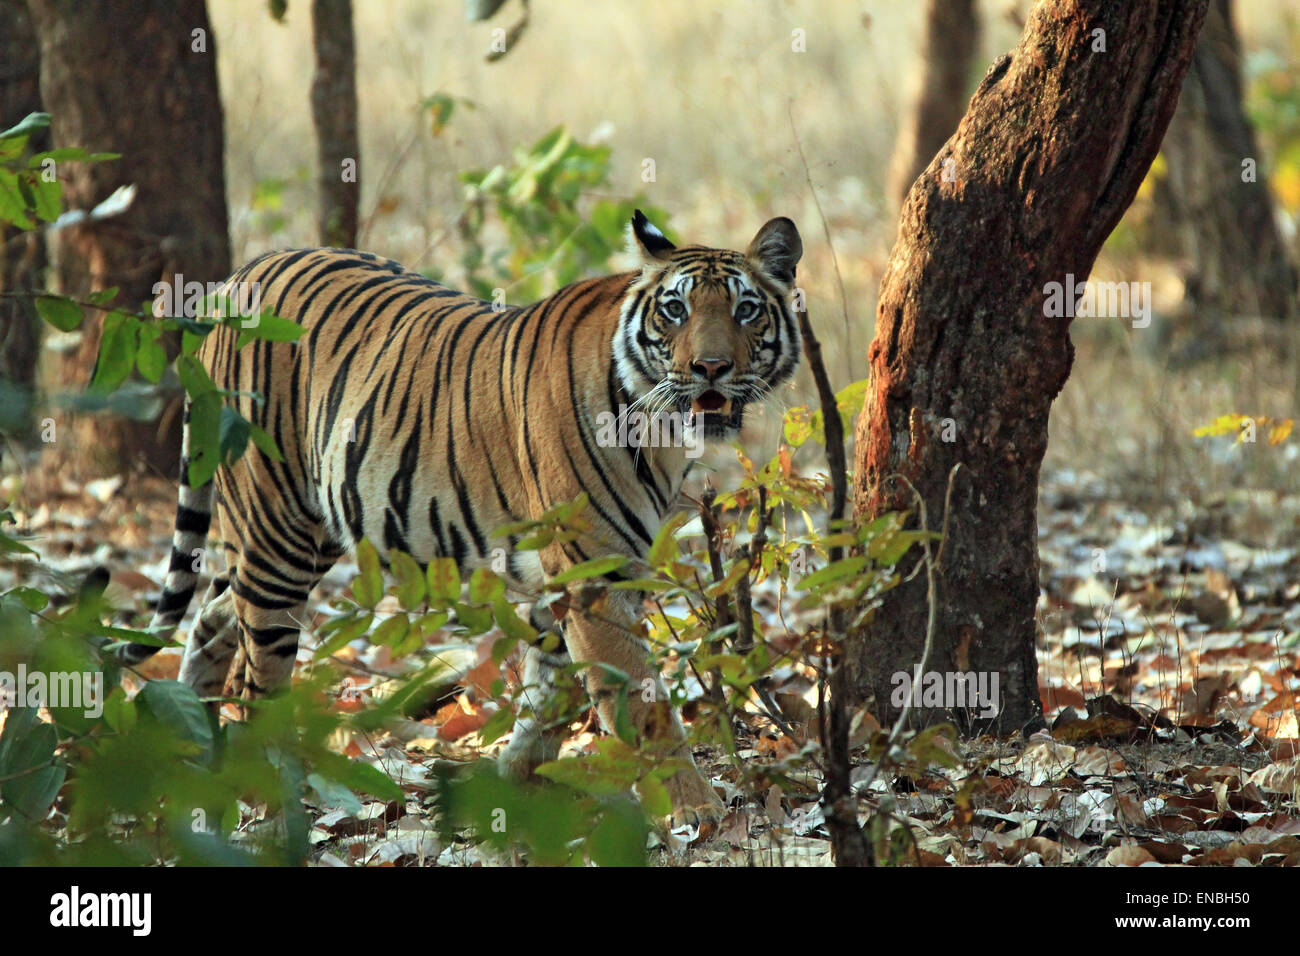 Tigre du Bengale (Panthera tigris tigris) Balade en forêt, à la recherche dans l'appareil photo, Bandhavgarh, Inde Banque D'Images